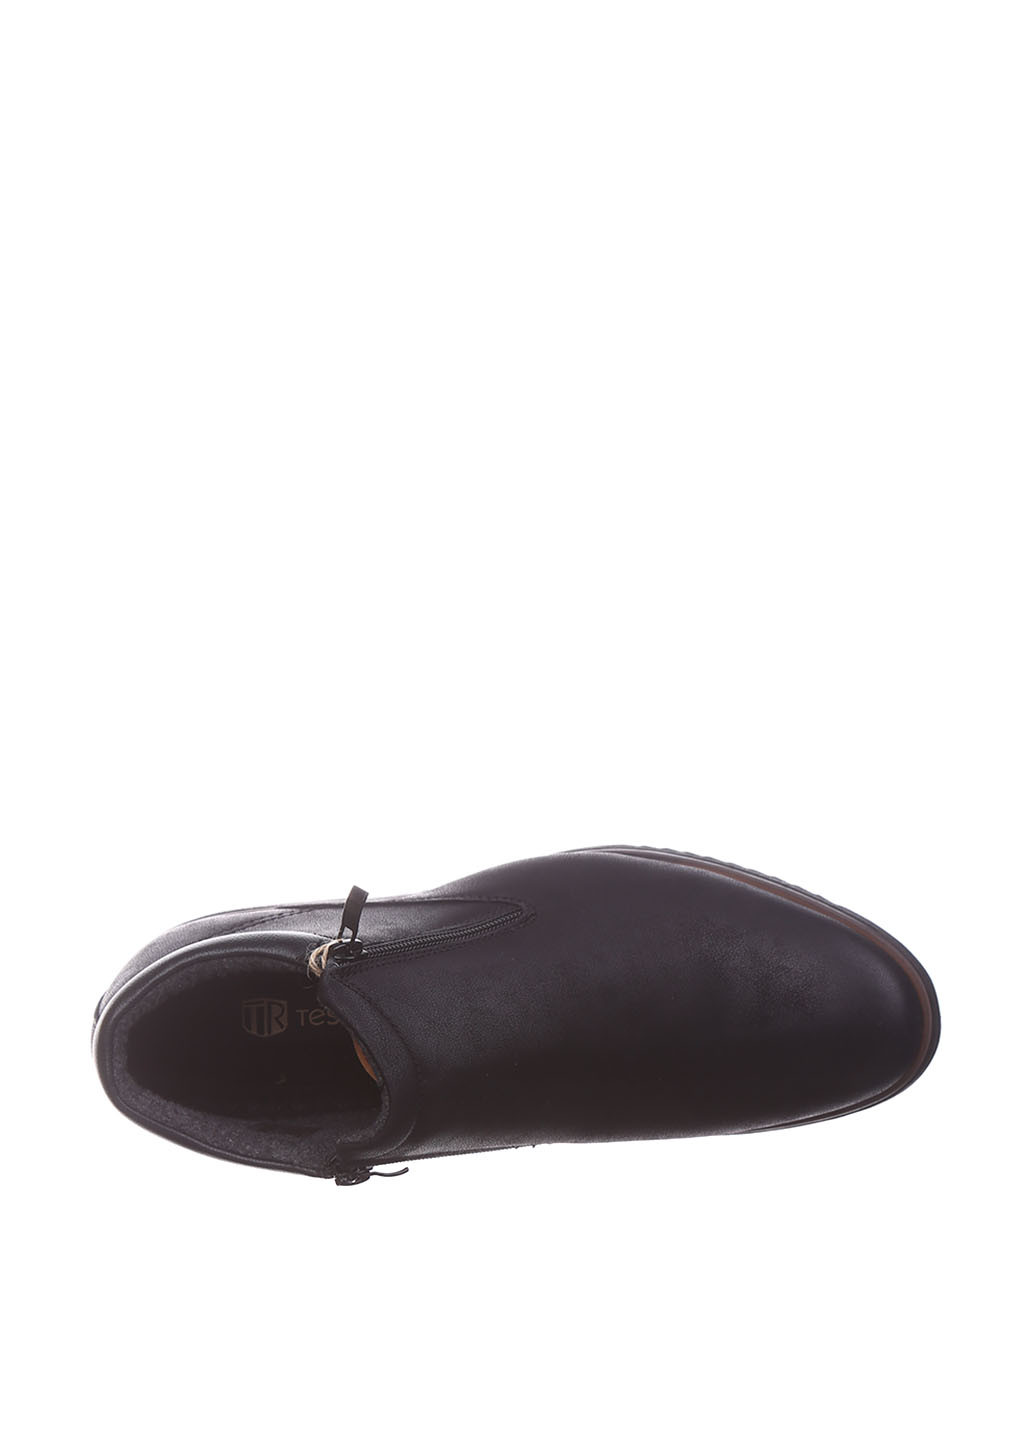 Черные осенние ботинки Tesoro